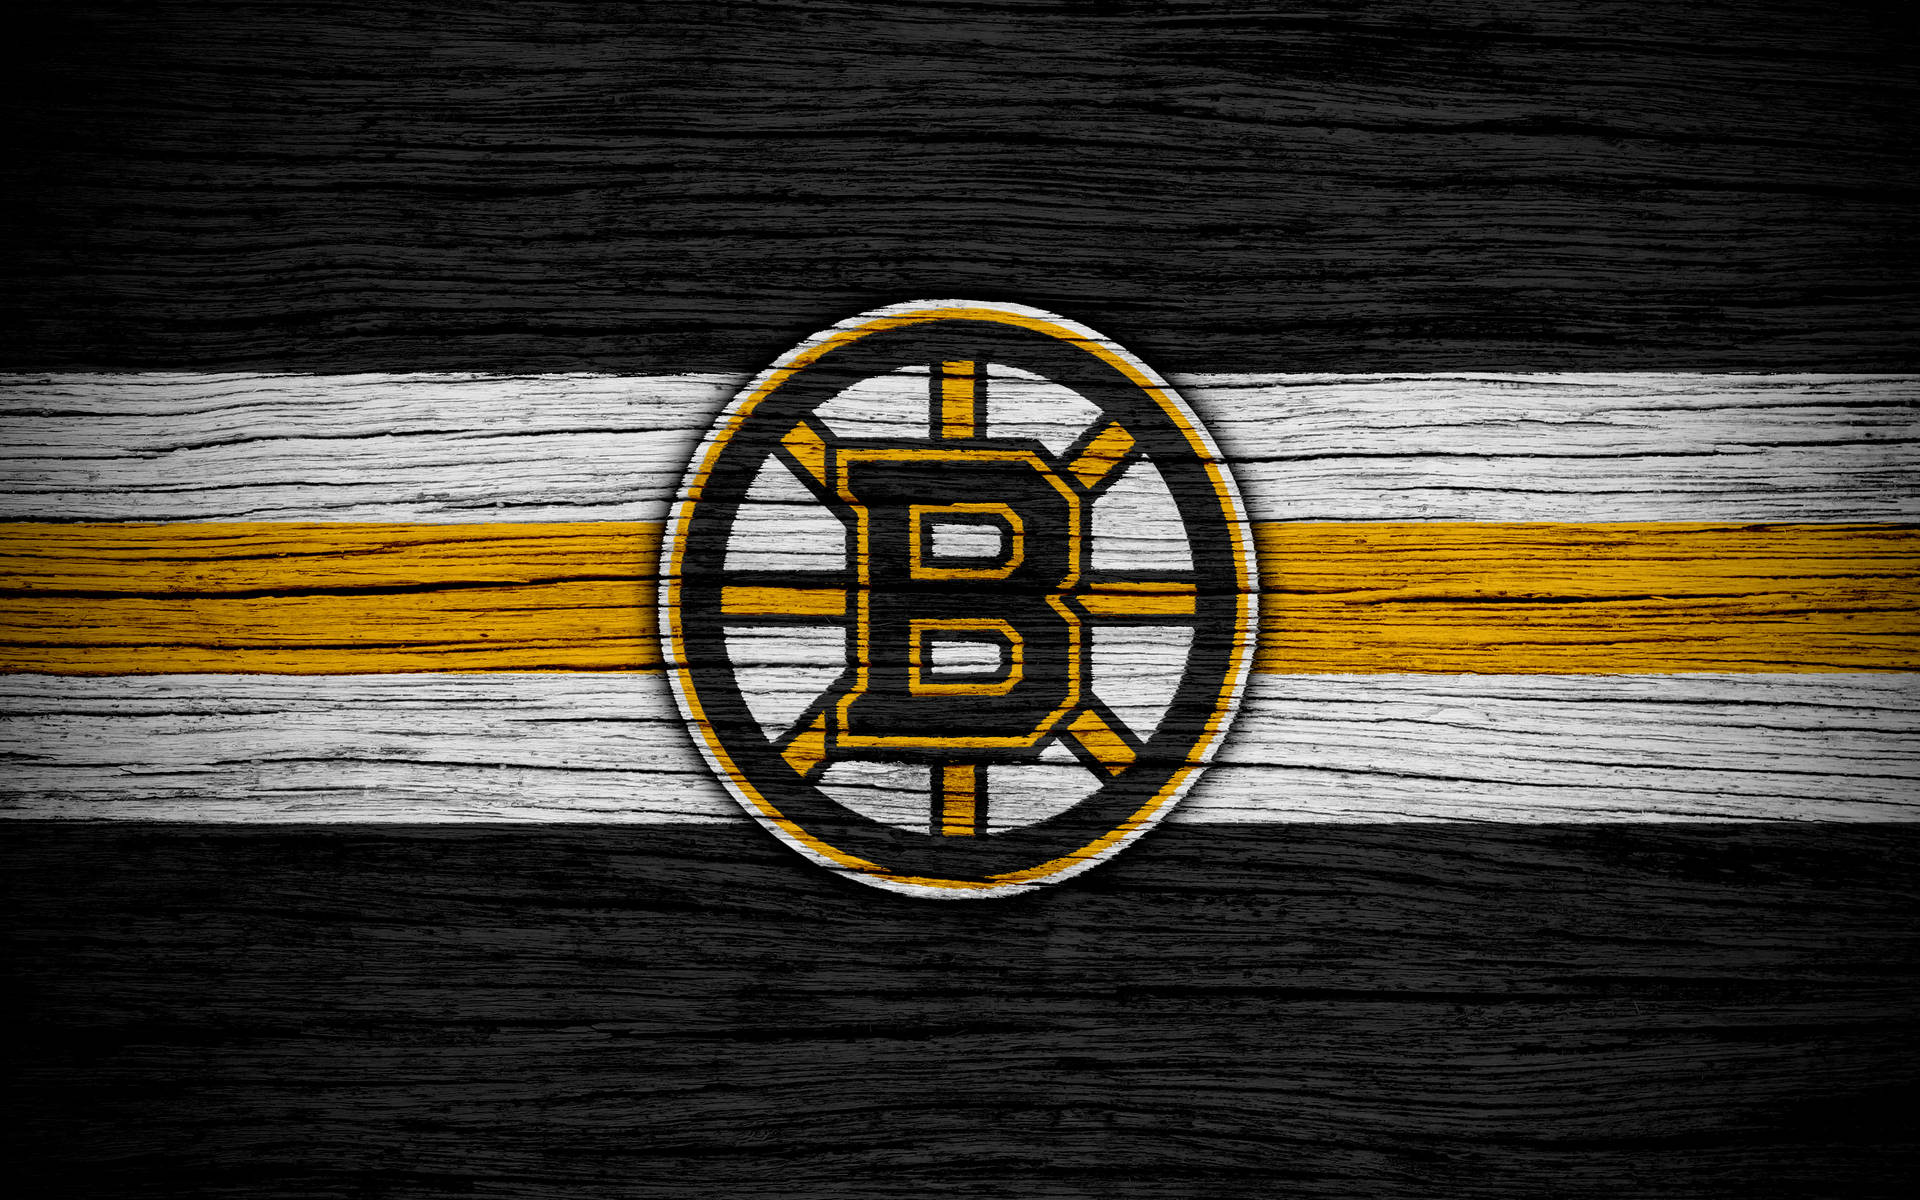 Boston Bruins Wood Grain